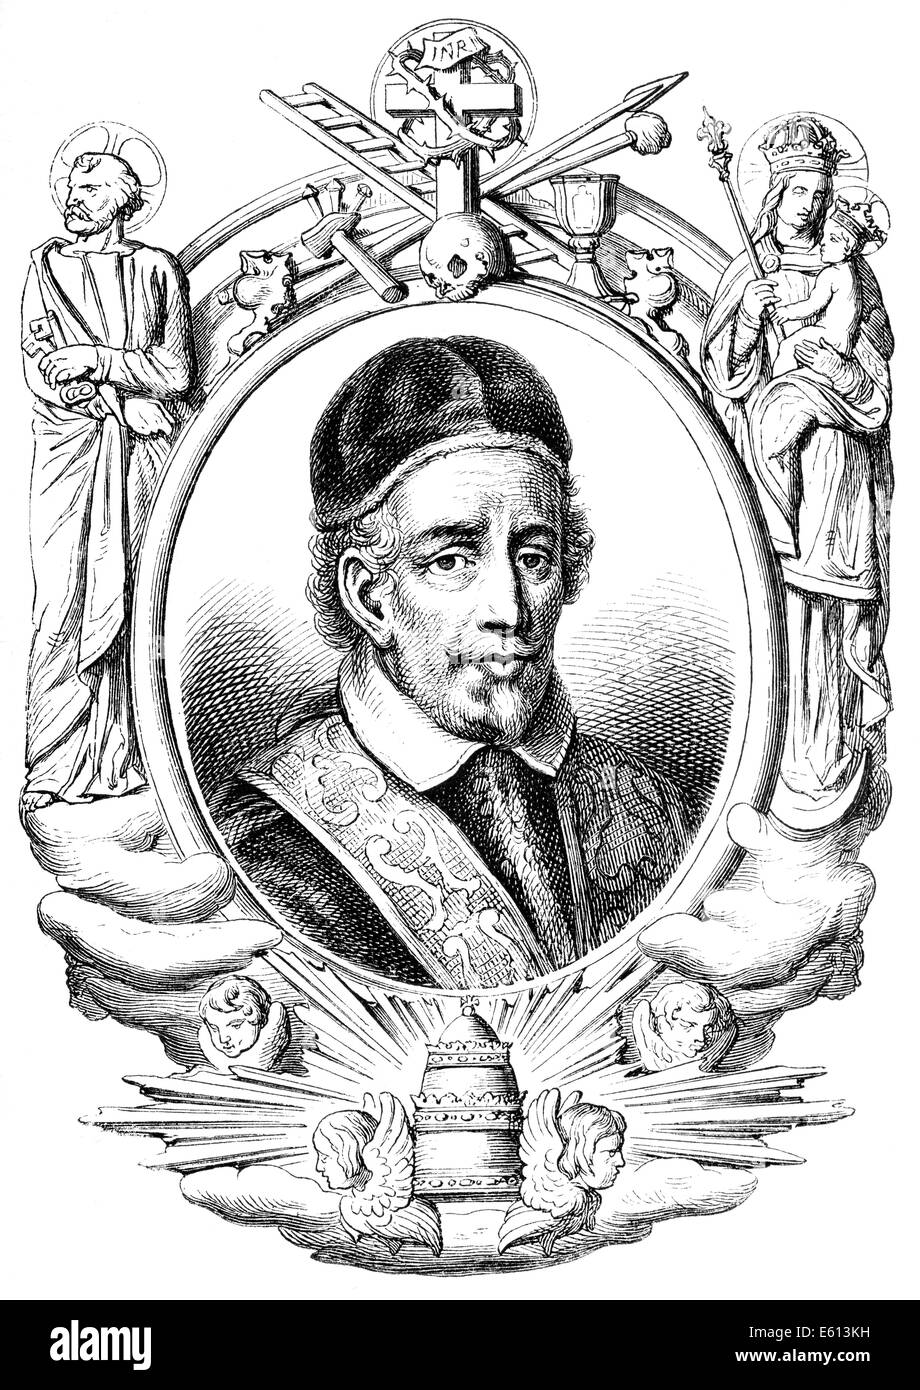 Pope Innocent XII, or Innocentius XII; Antonio Pignatelli, 1615-1700, Pope from 1691 to 1700, Innozenz XII., or Innocentius XII; Stock Photo